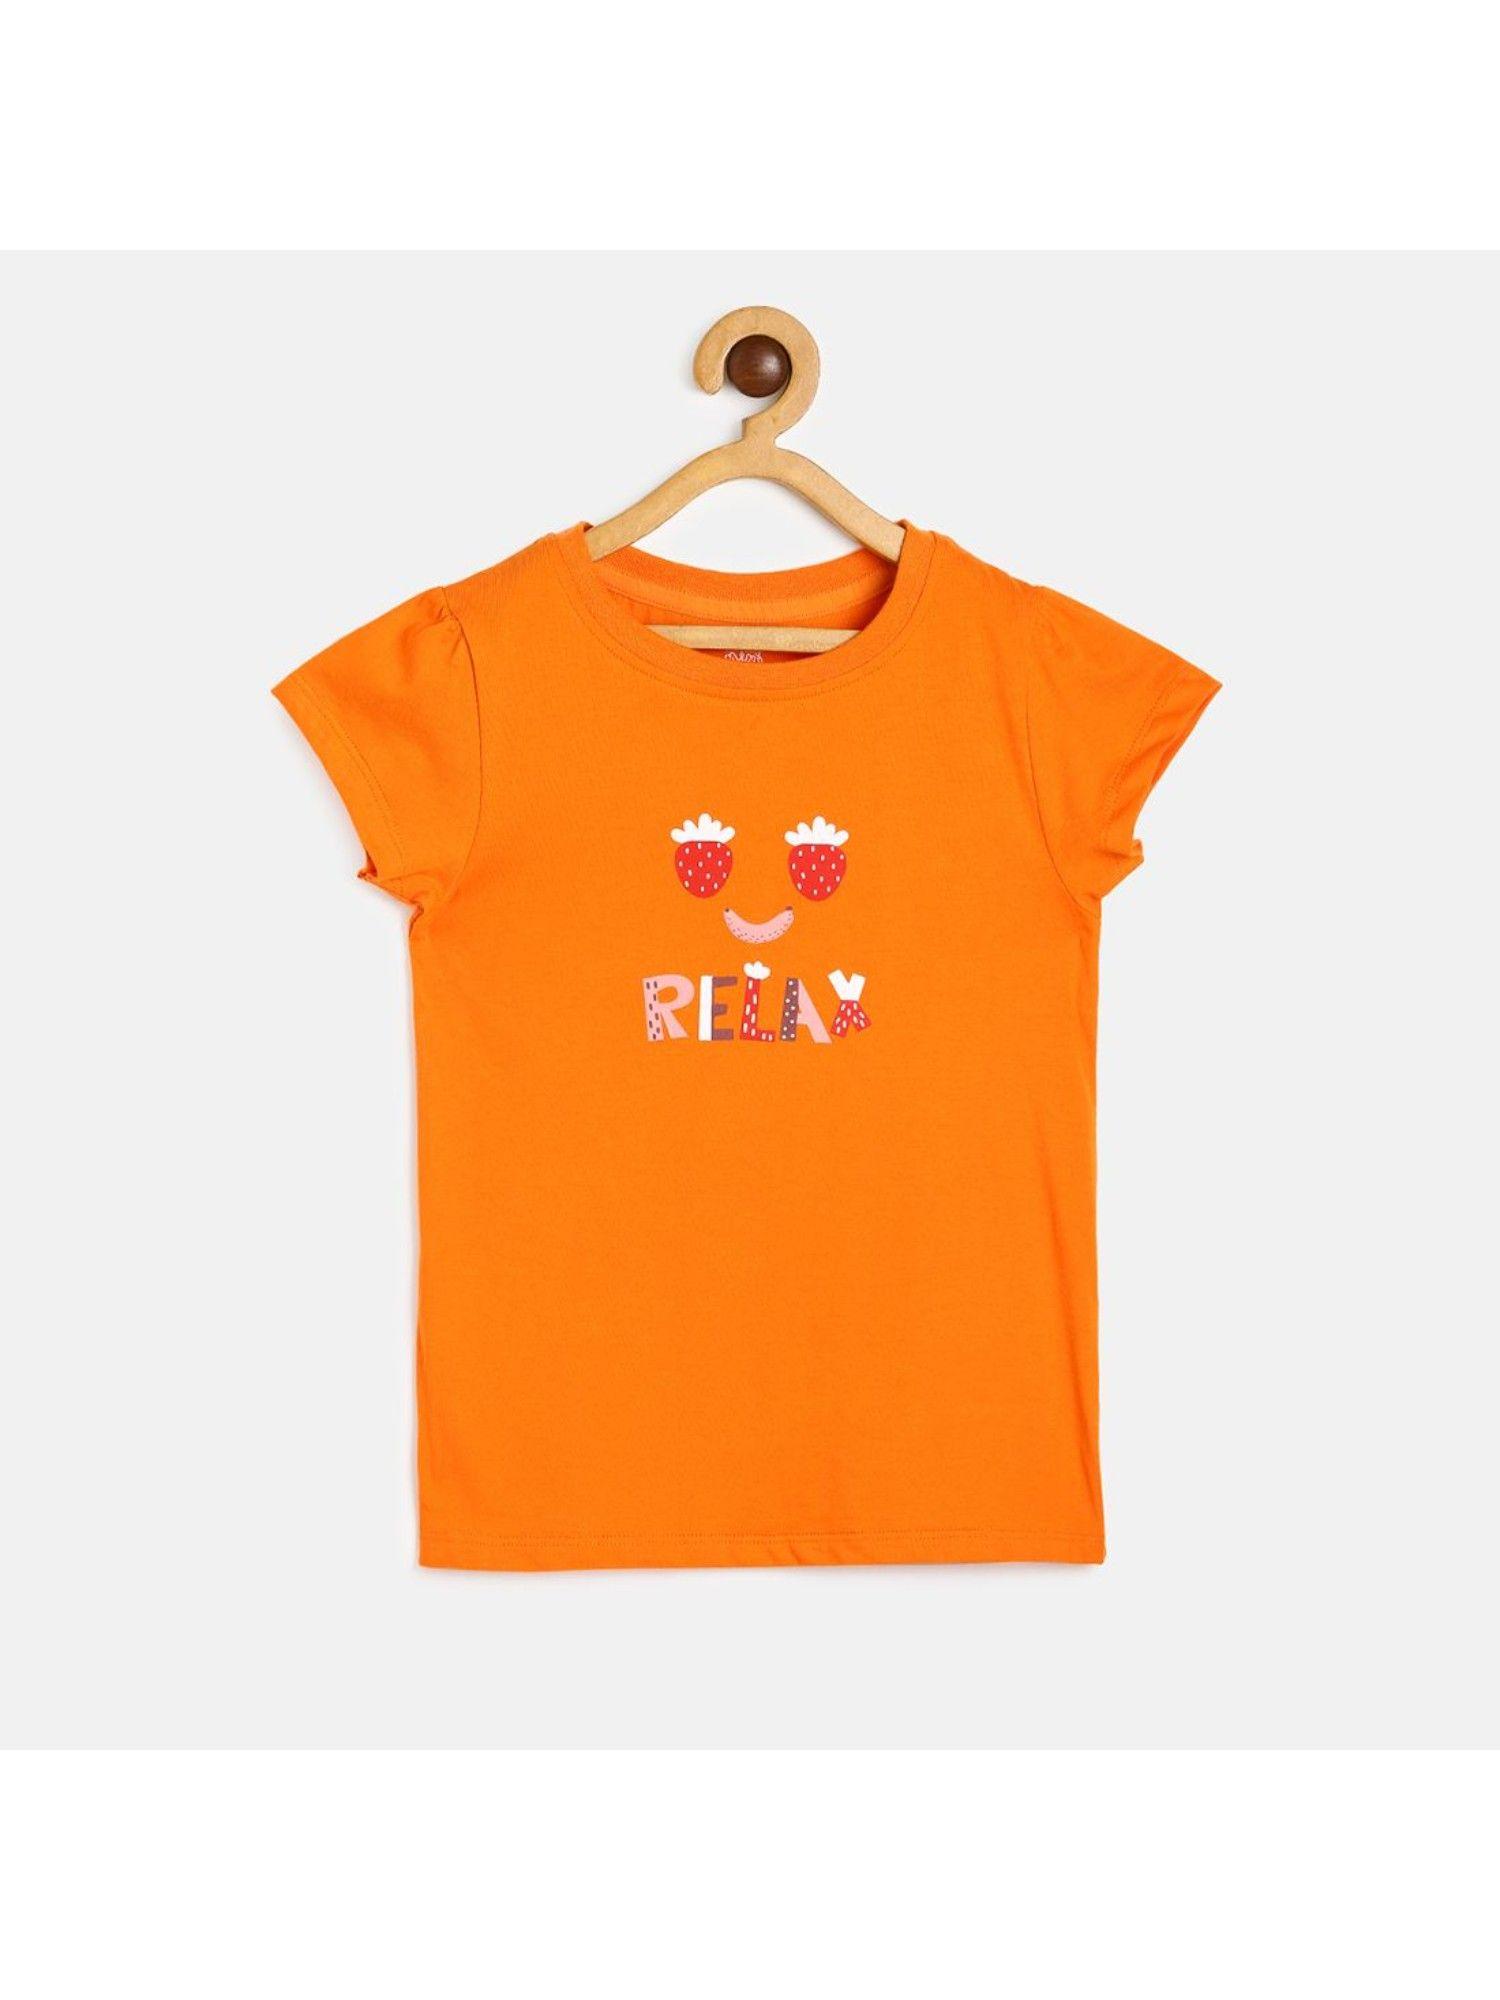 kids-girls-orange-knit-top